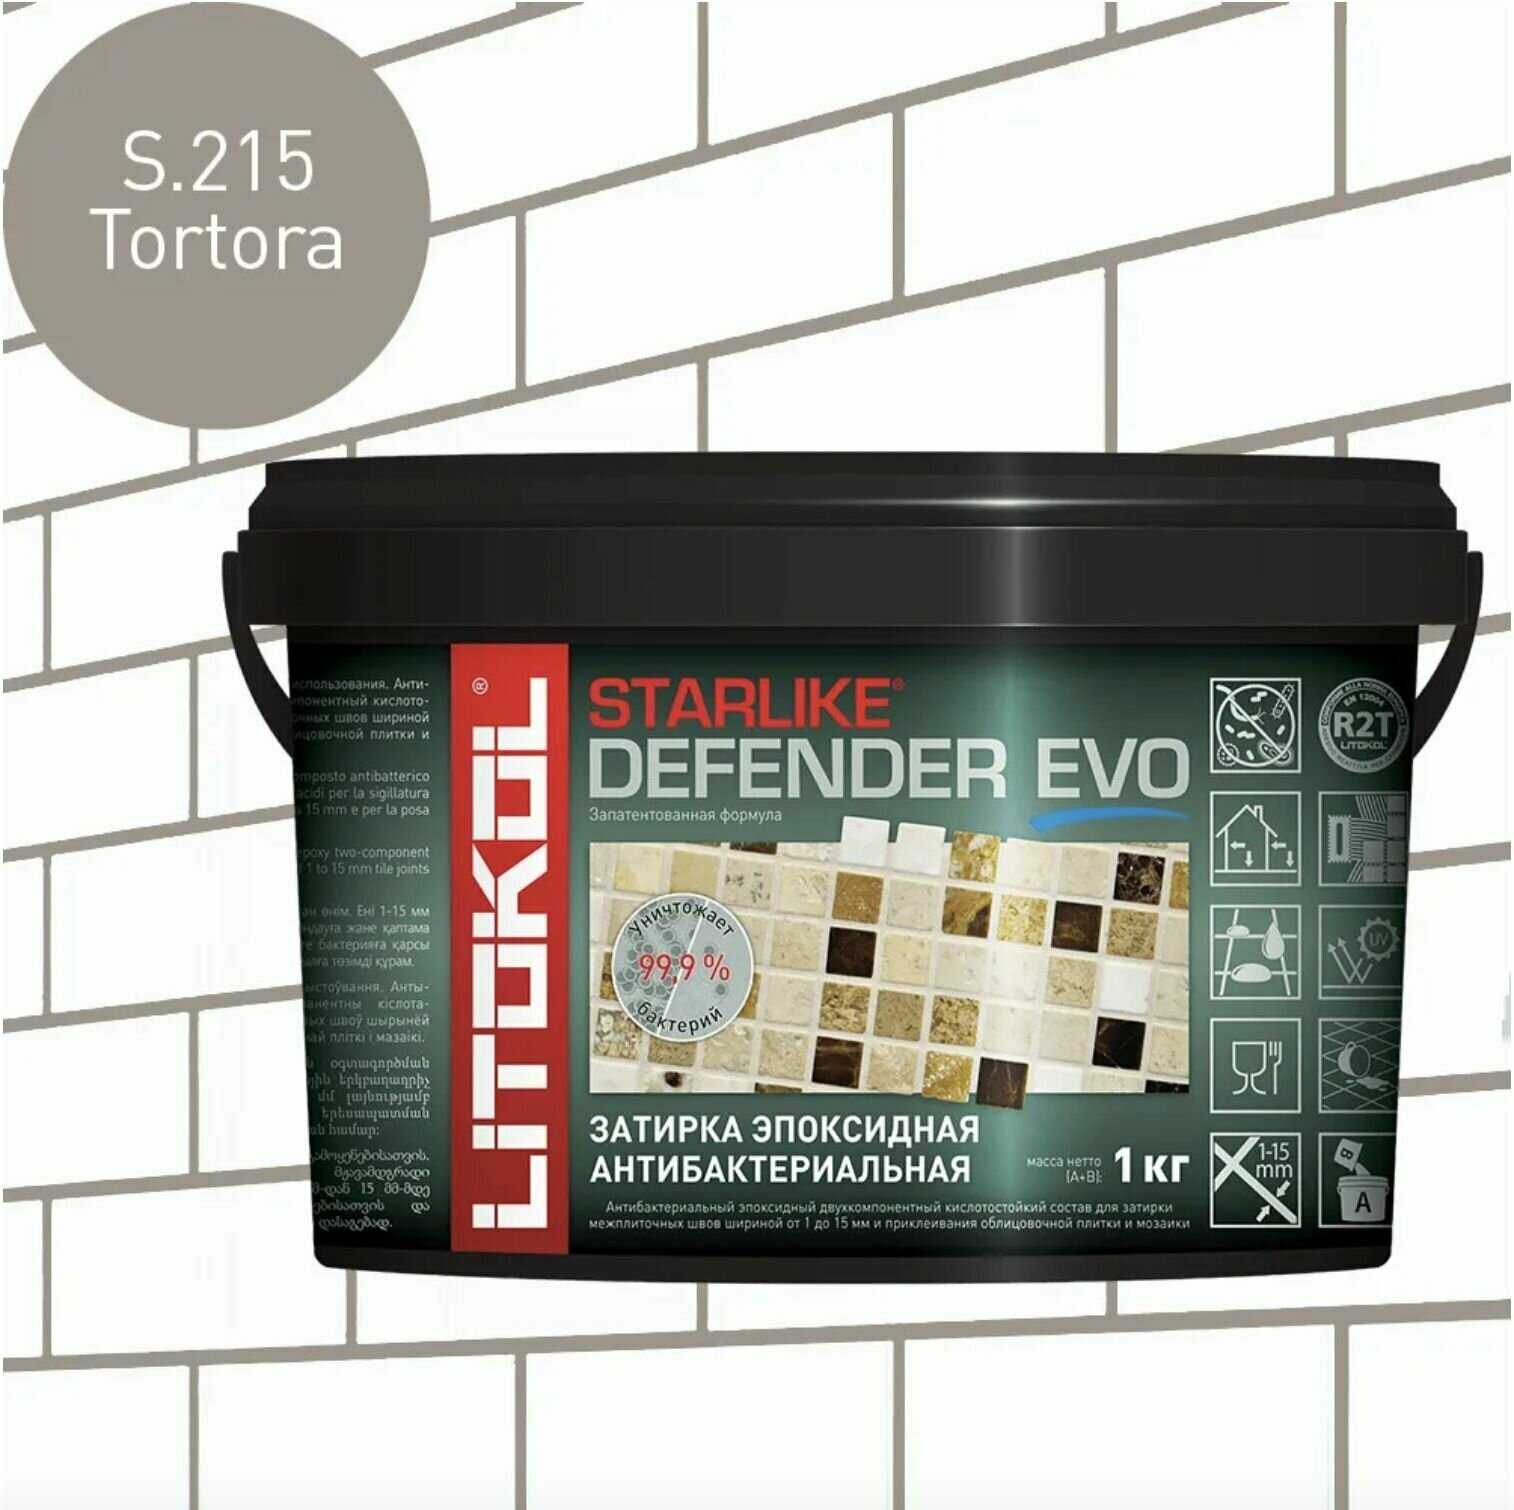 Затирка для плитки эпоксидная антибактериальная LITOKOL Starlike Defender Evo S.215 цвет Tortora 1 кг